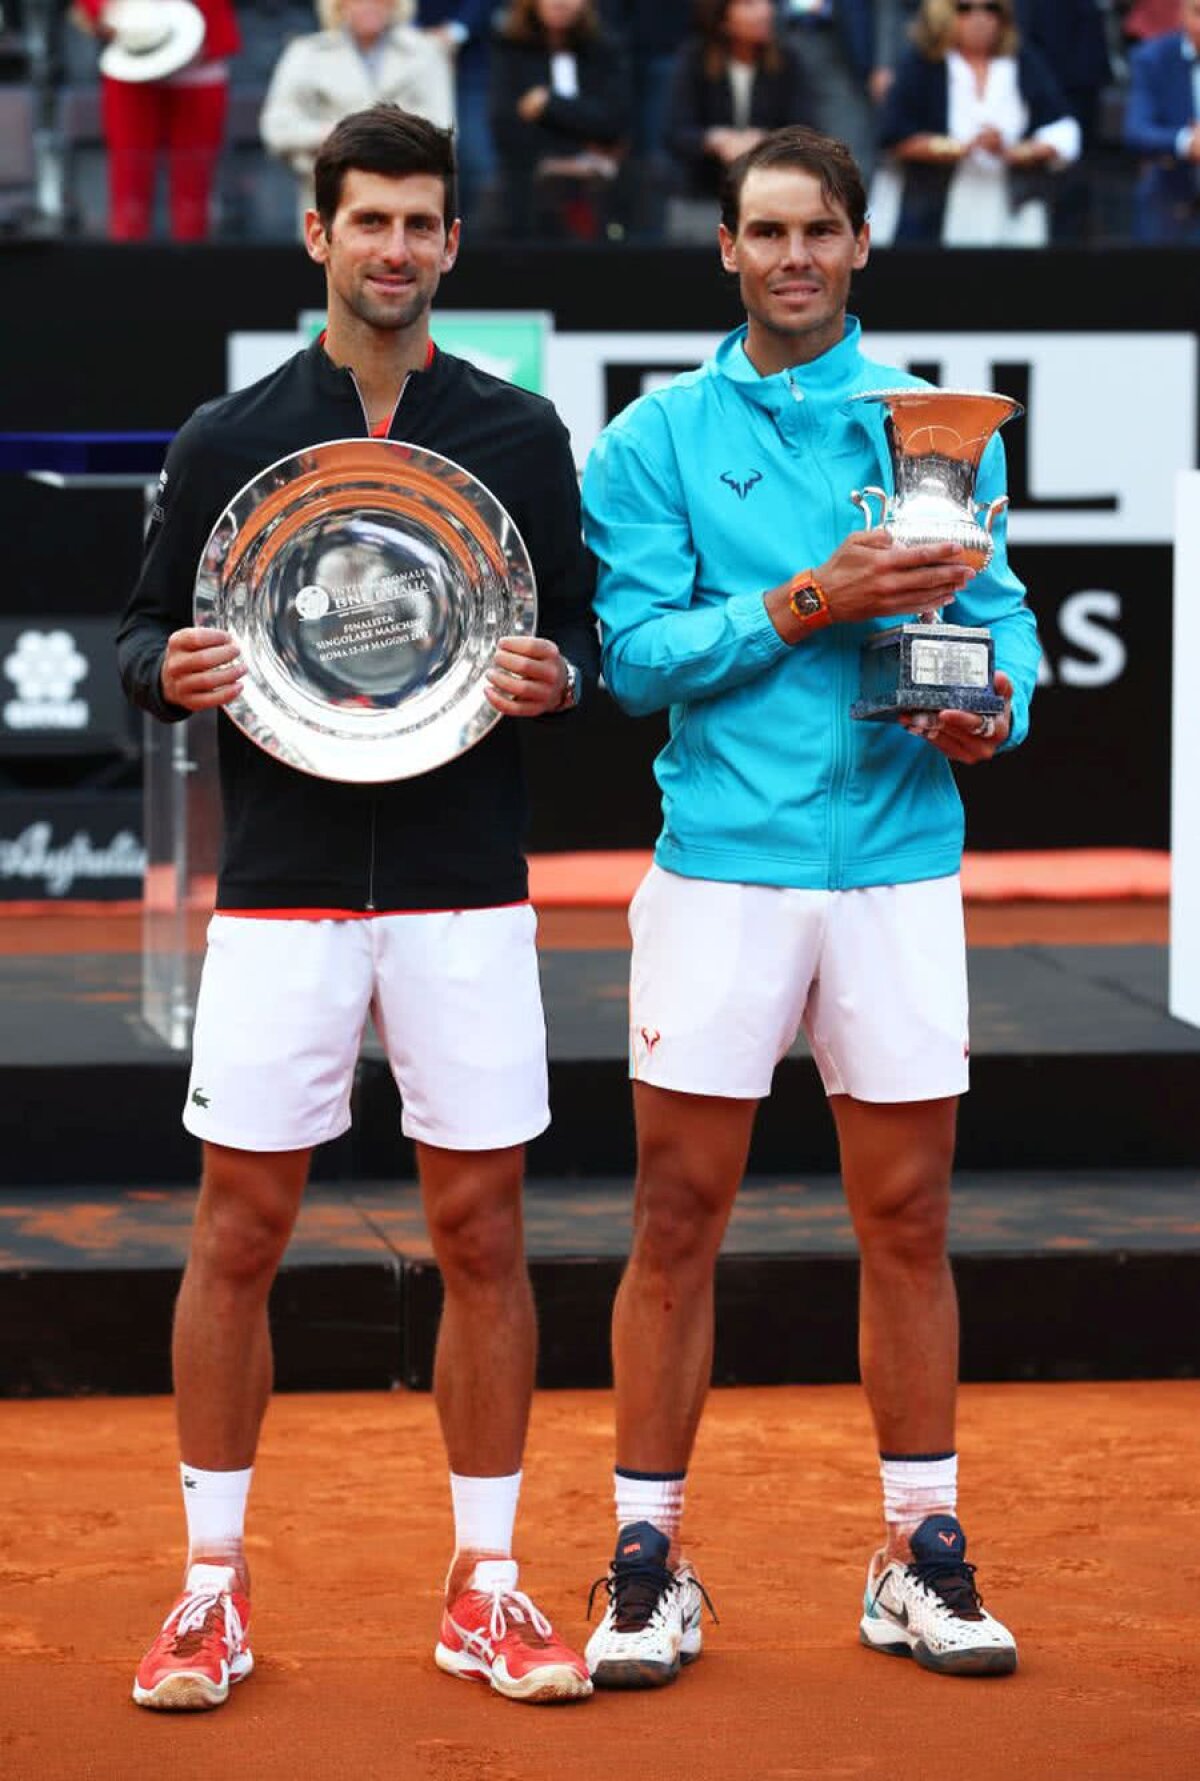 ROLAND GARROS 2019 // Nadal și Djokovic, cea mai crâncenă rivalitate pe zgura de la Paris! Sau vine surpriza din NextGen?